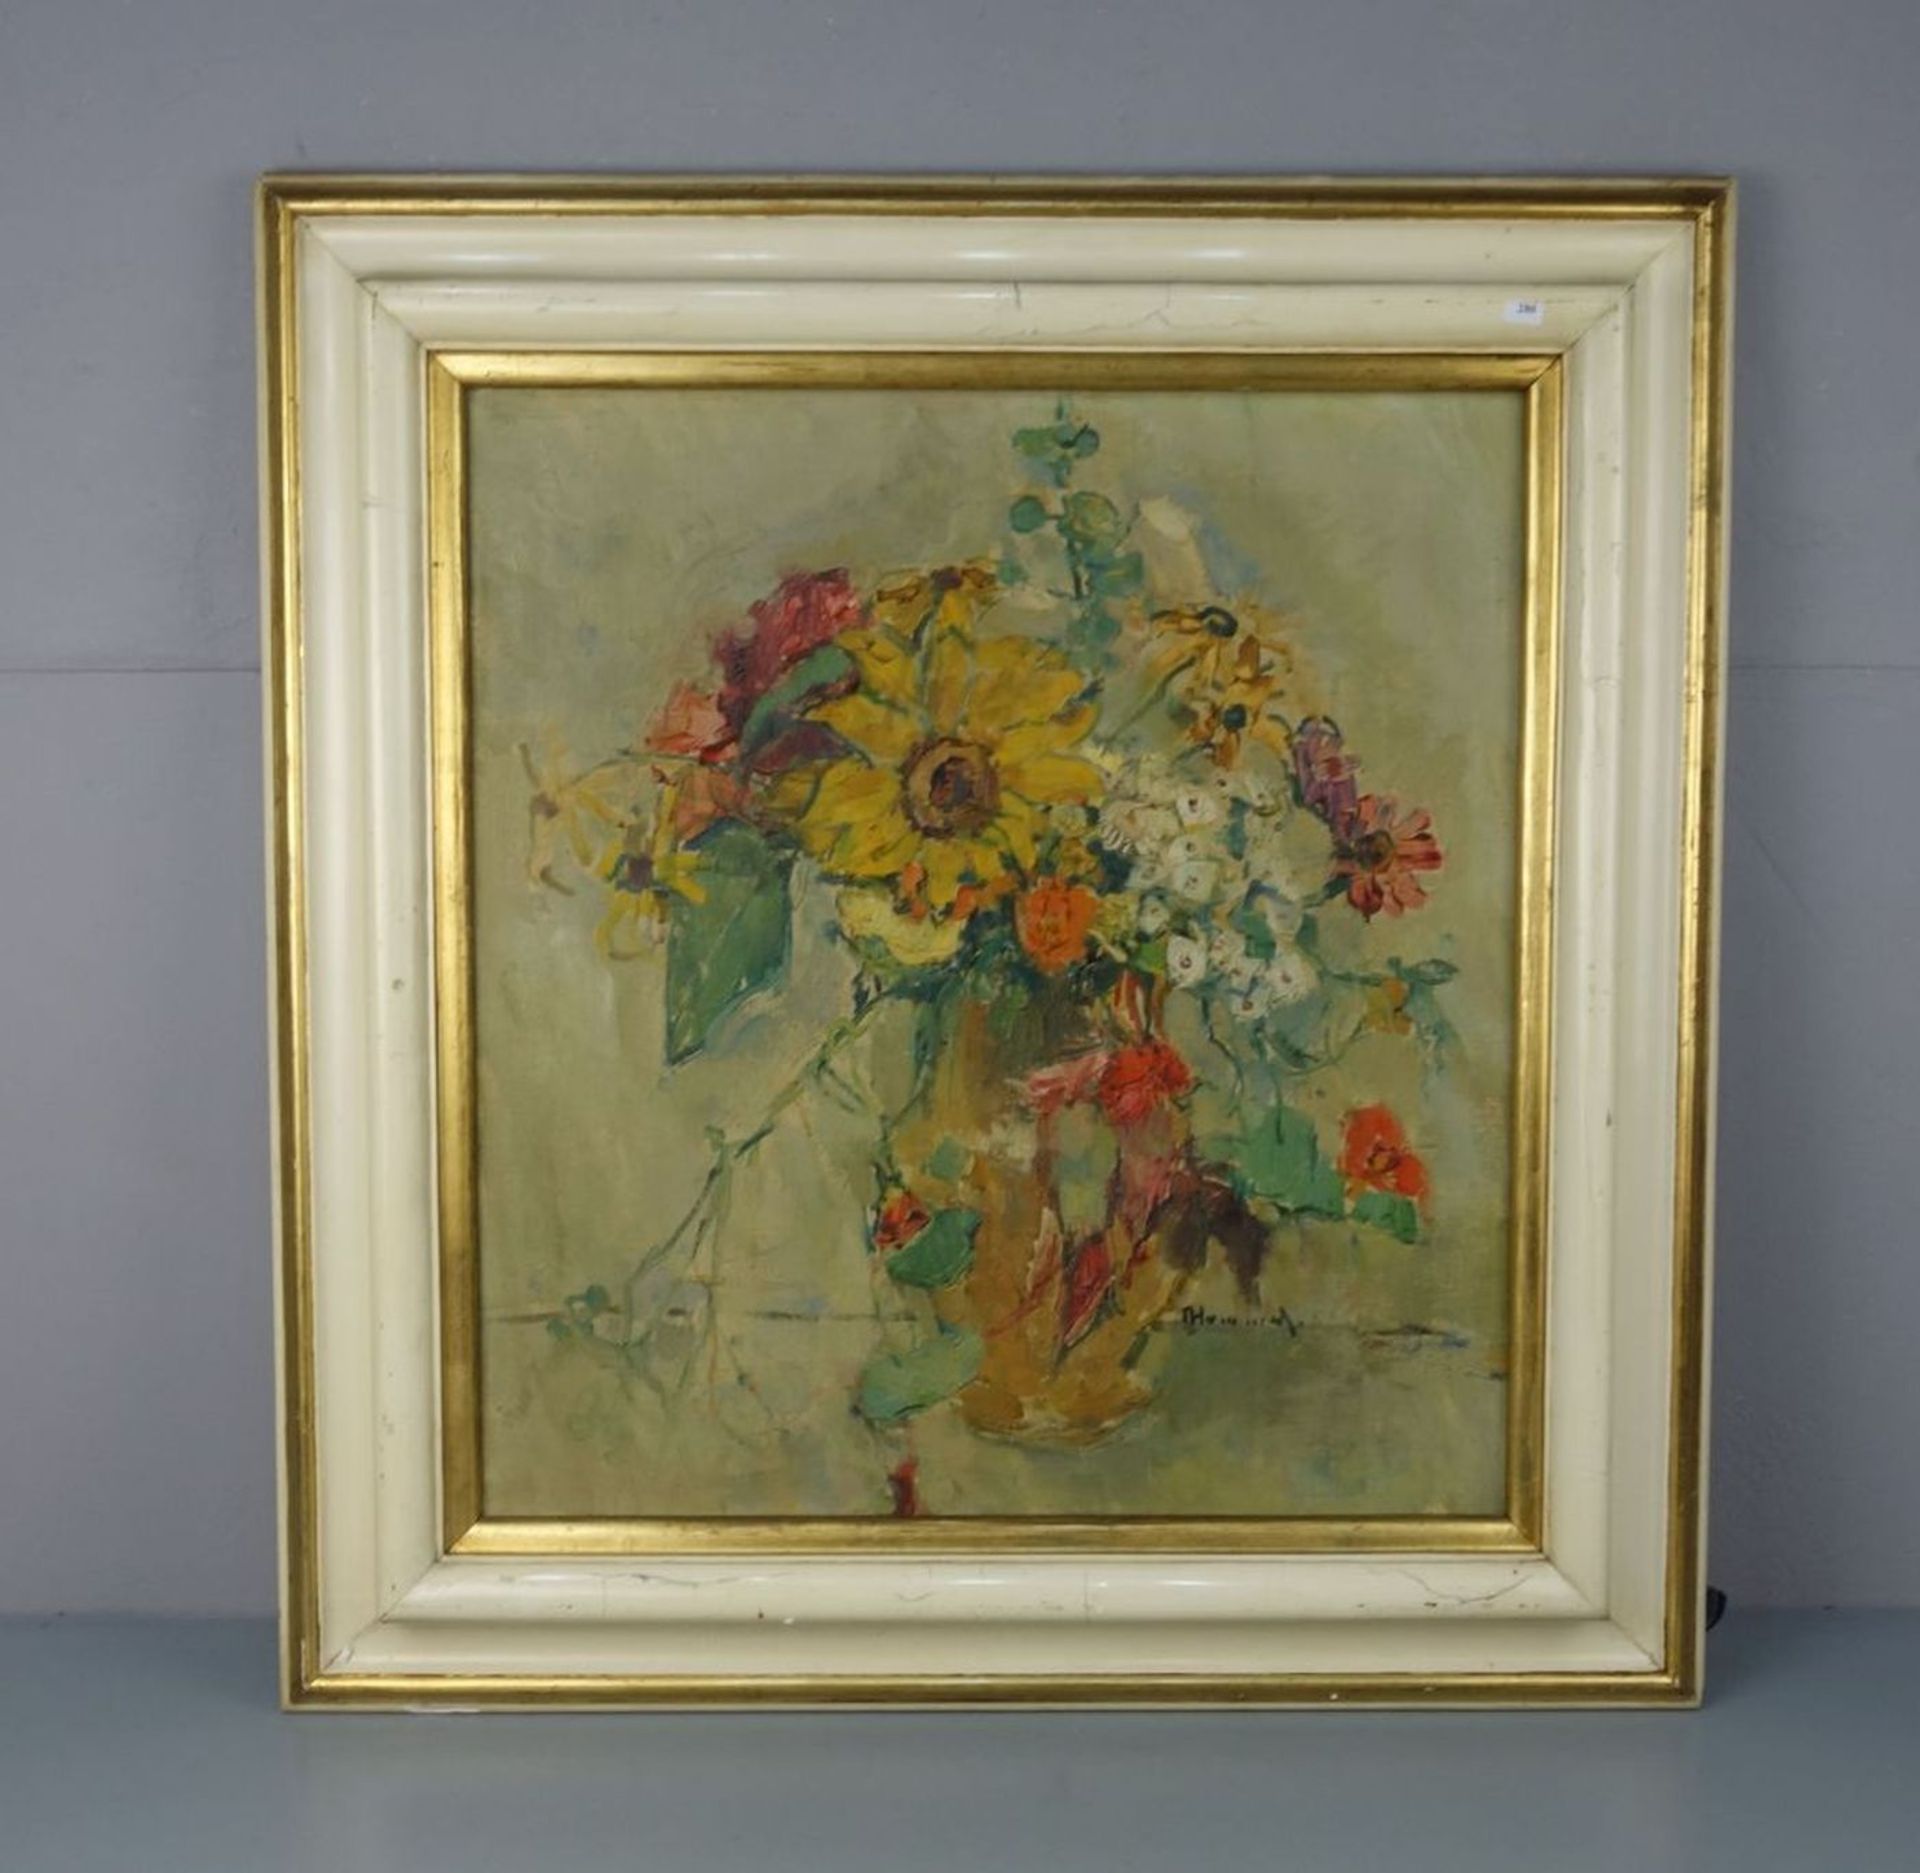 HUMMEL, THEODOR (Schliersee 1864-1939 München), Gemälde / painting: "Blumenstillleben", Öl auf